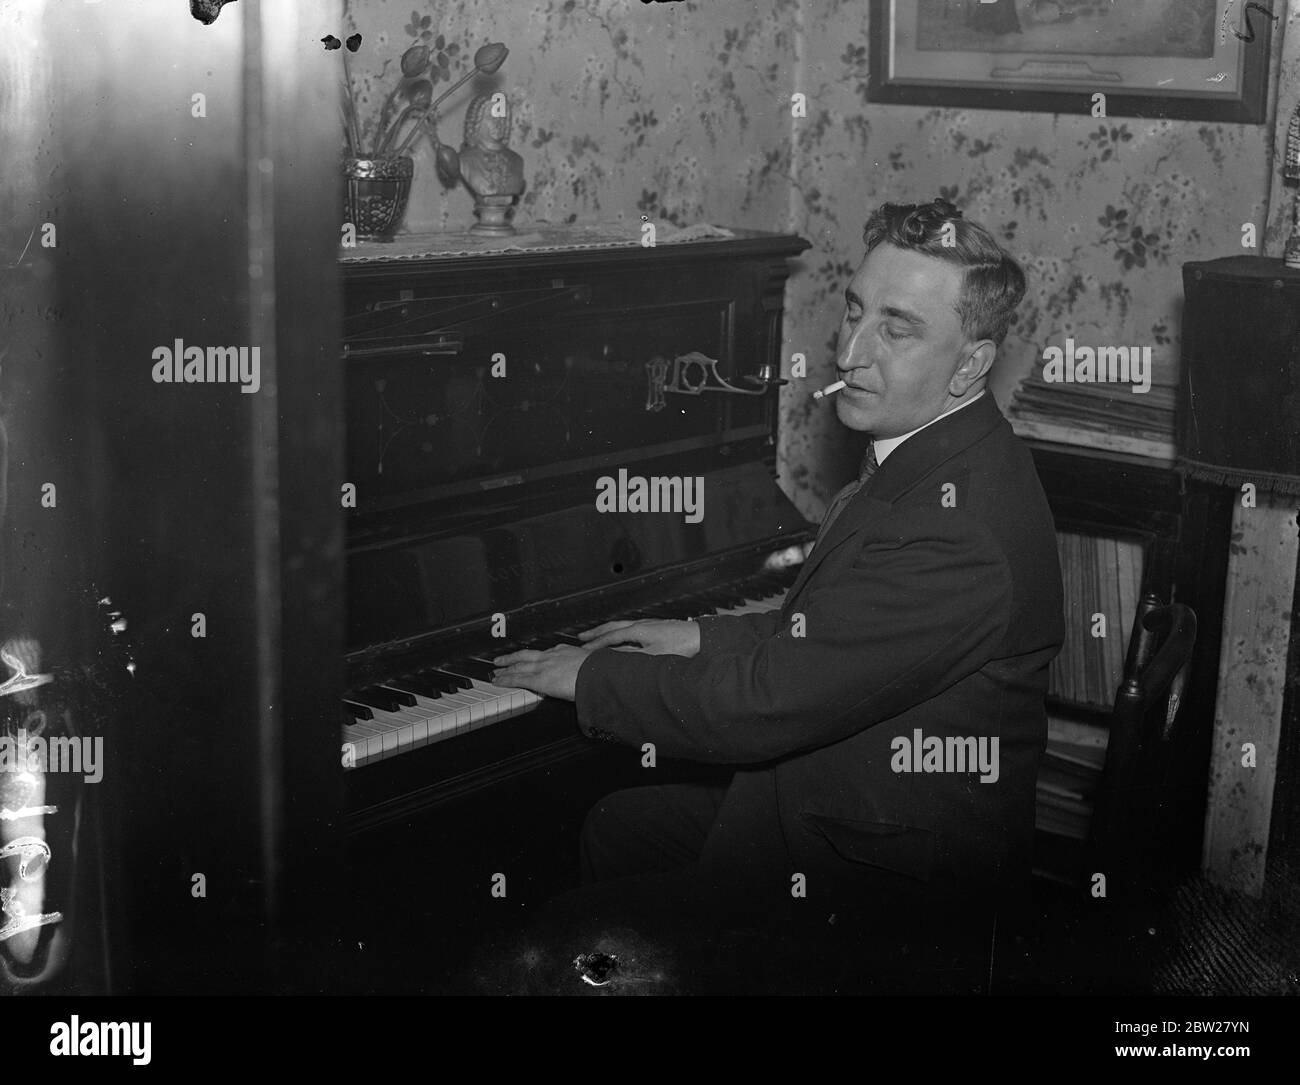 Big piano Banque d'images noir et blanc - Alamy